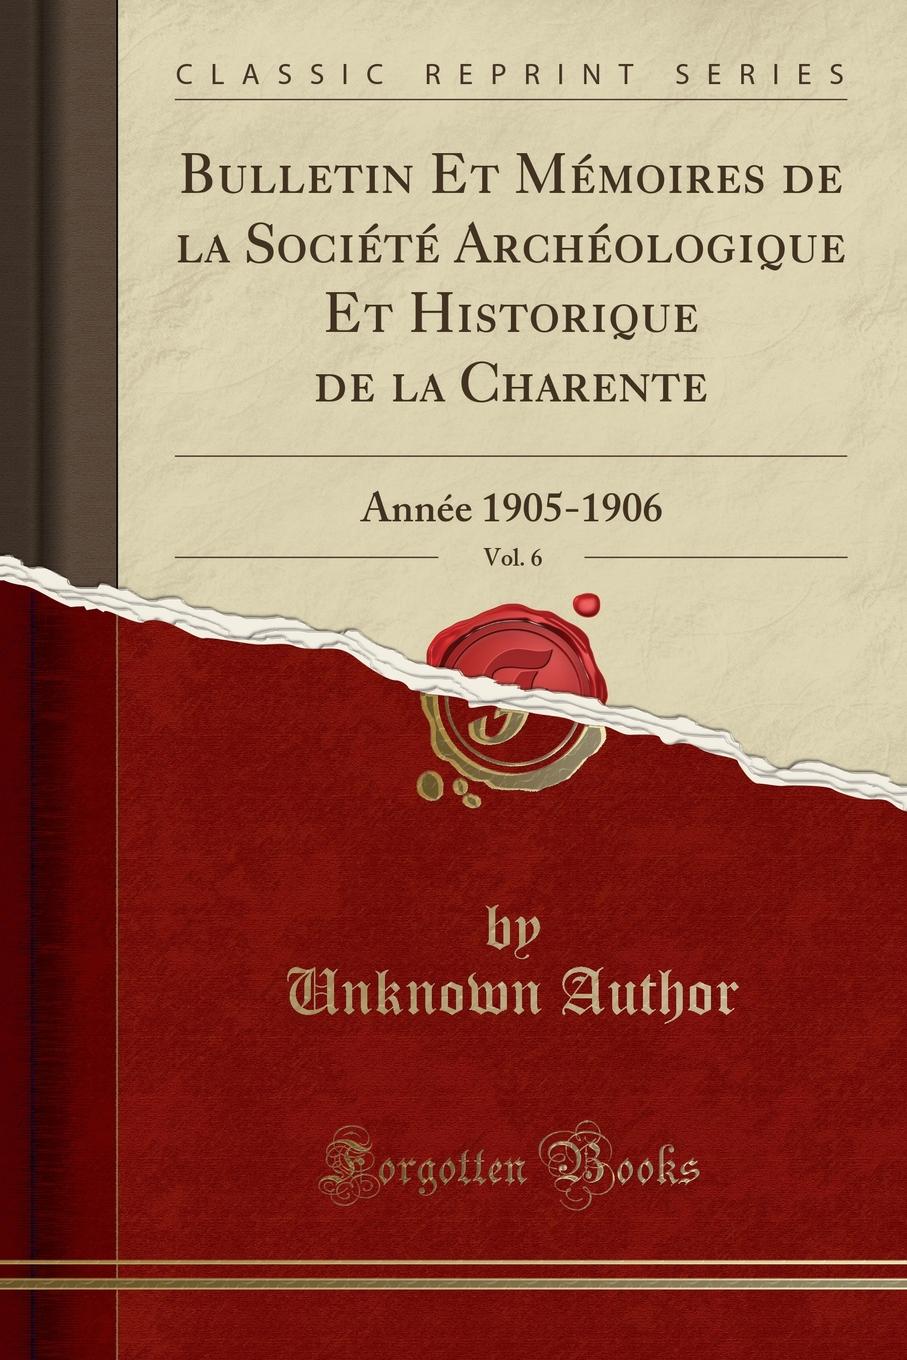 Unknown Author Bulletin Et Memoires de la Societe Archeologique Et Historique de la Charente, Vol. 6. Annee 1905-1906 (Classic Reprint)